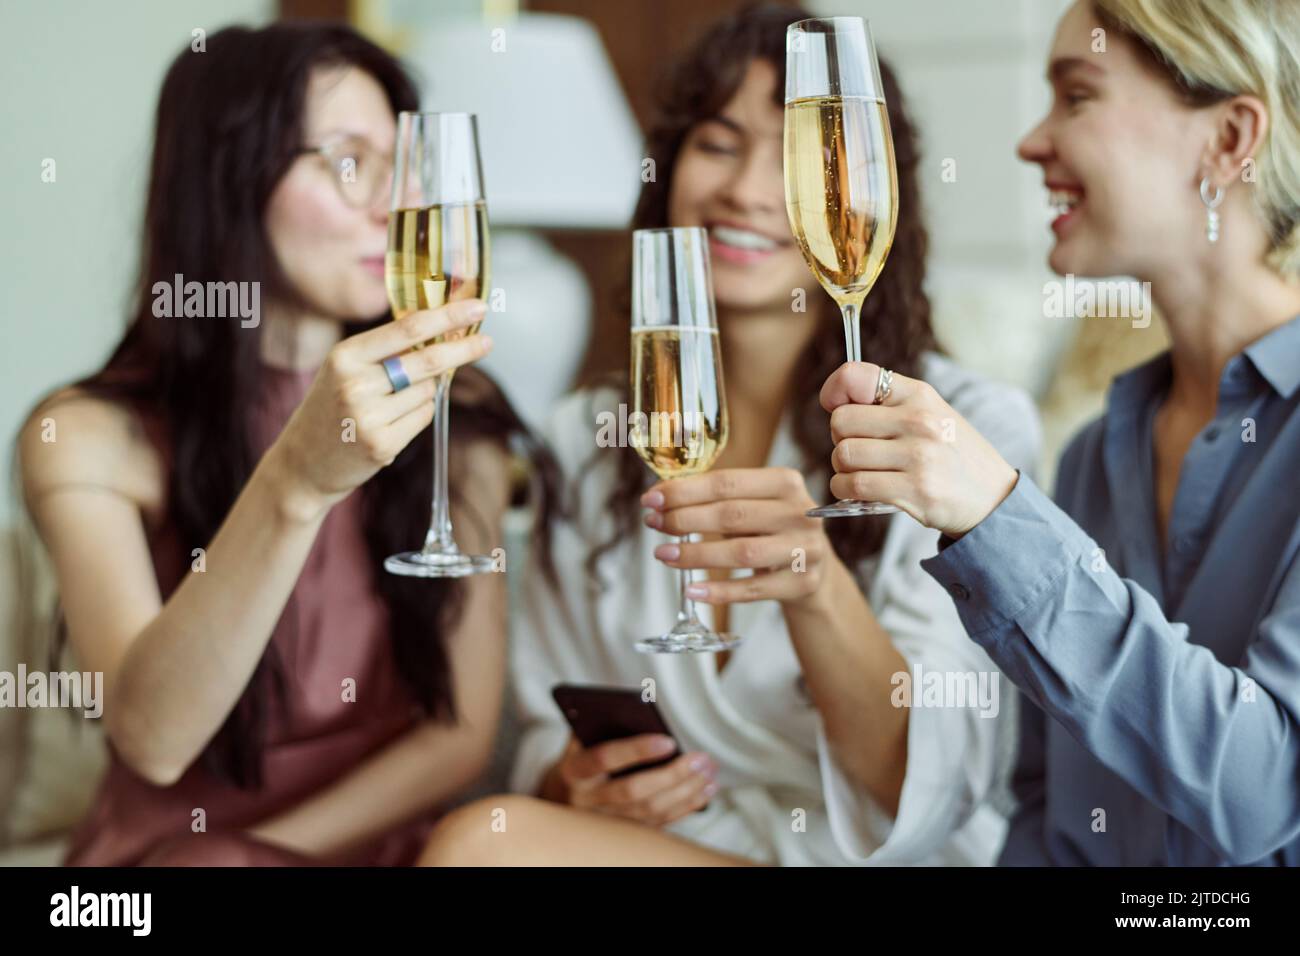 Drei glückliche Mädchen mit Champagner feiern die bevorstehende Hochzeit eines von ihnen, während sie Flöten halten und auf der Junggesellinnenparty anstoßen Stockfoto